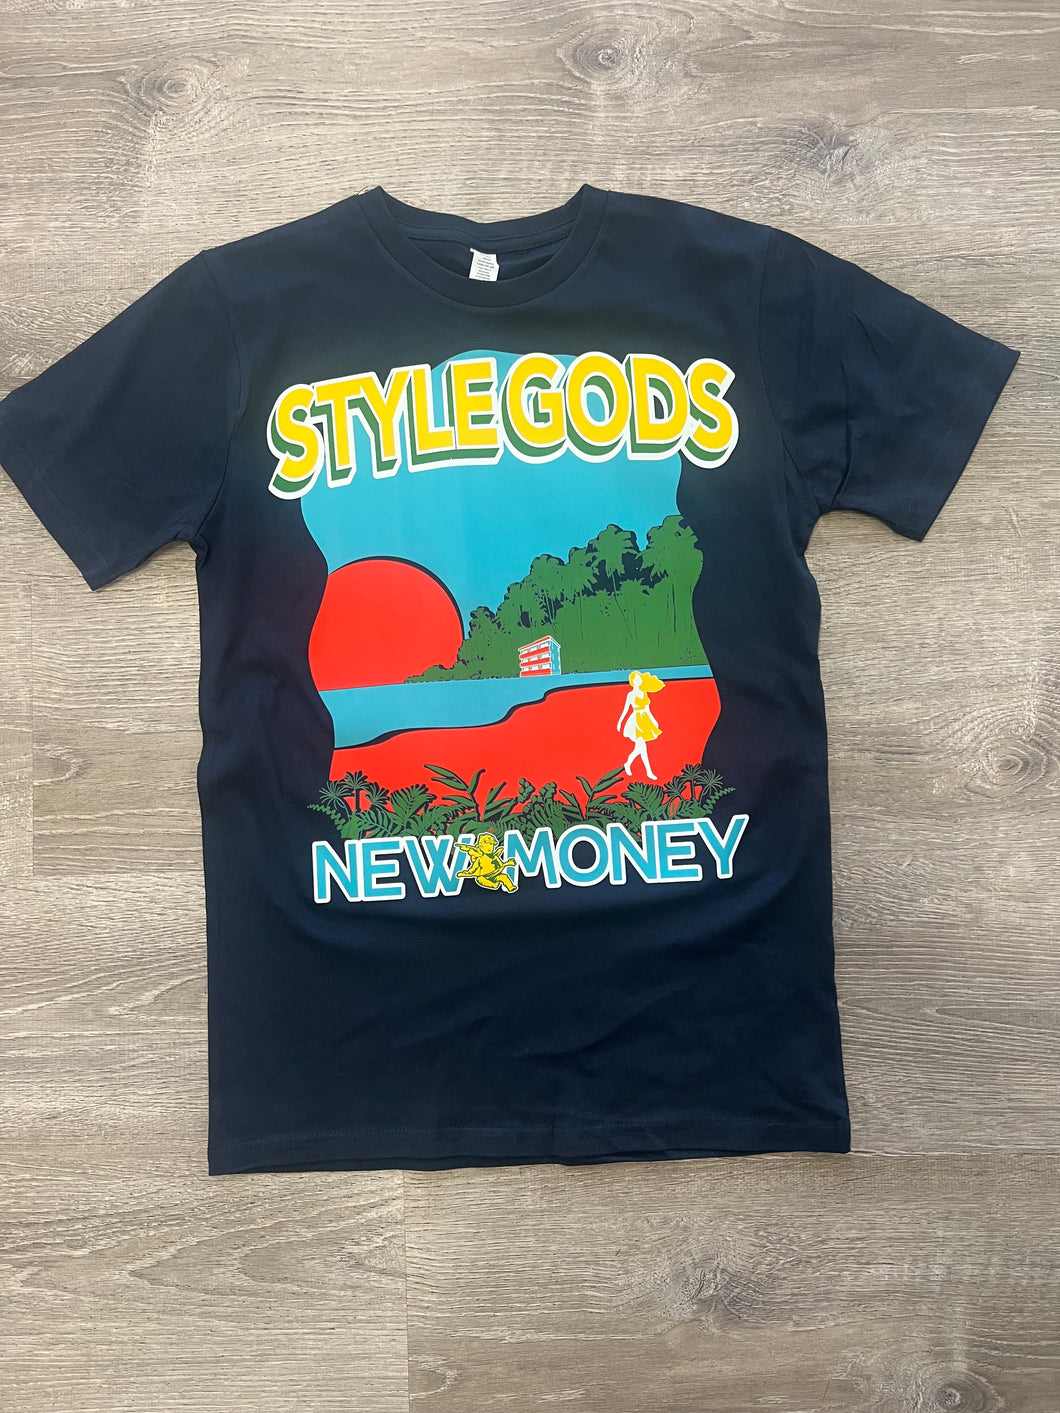 StyleGods New Money - Navy